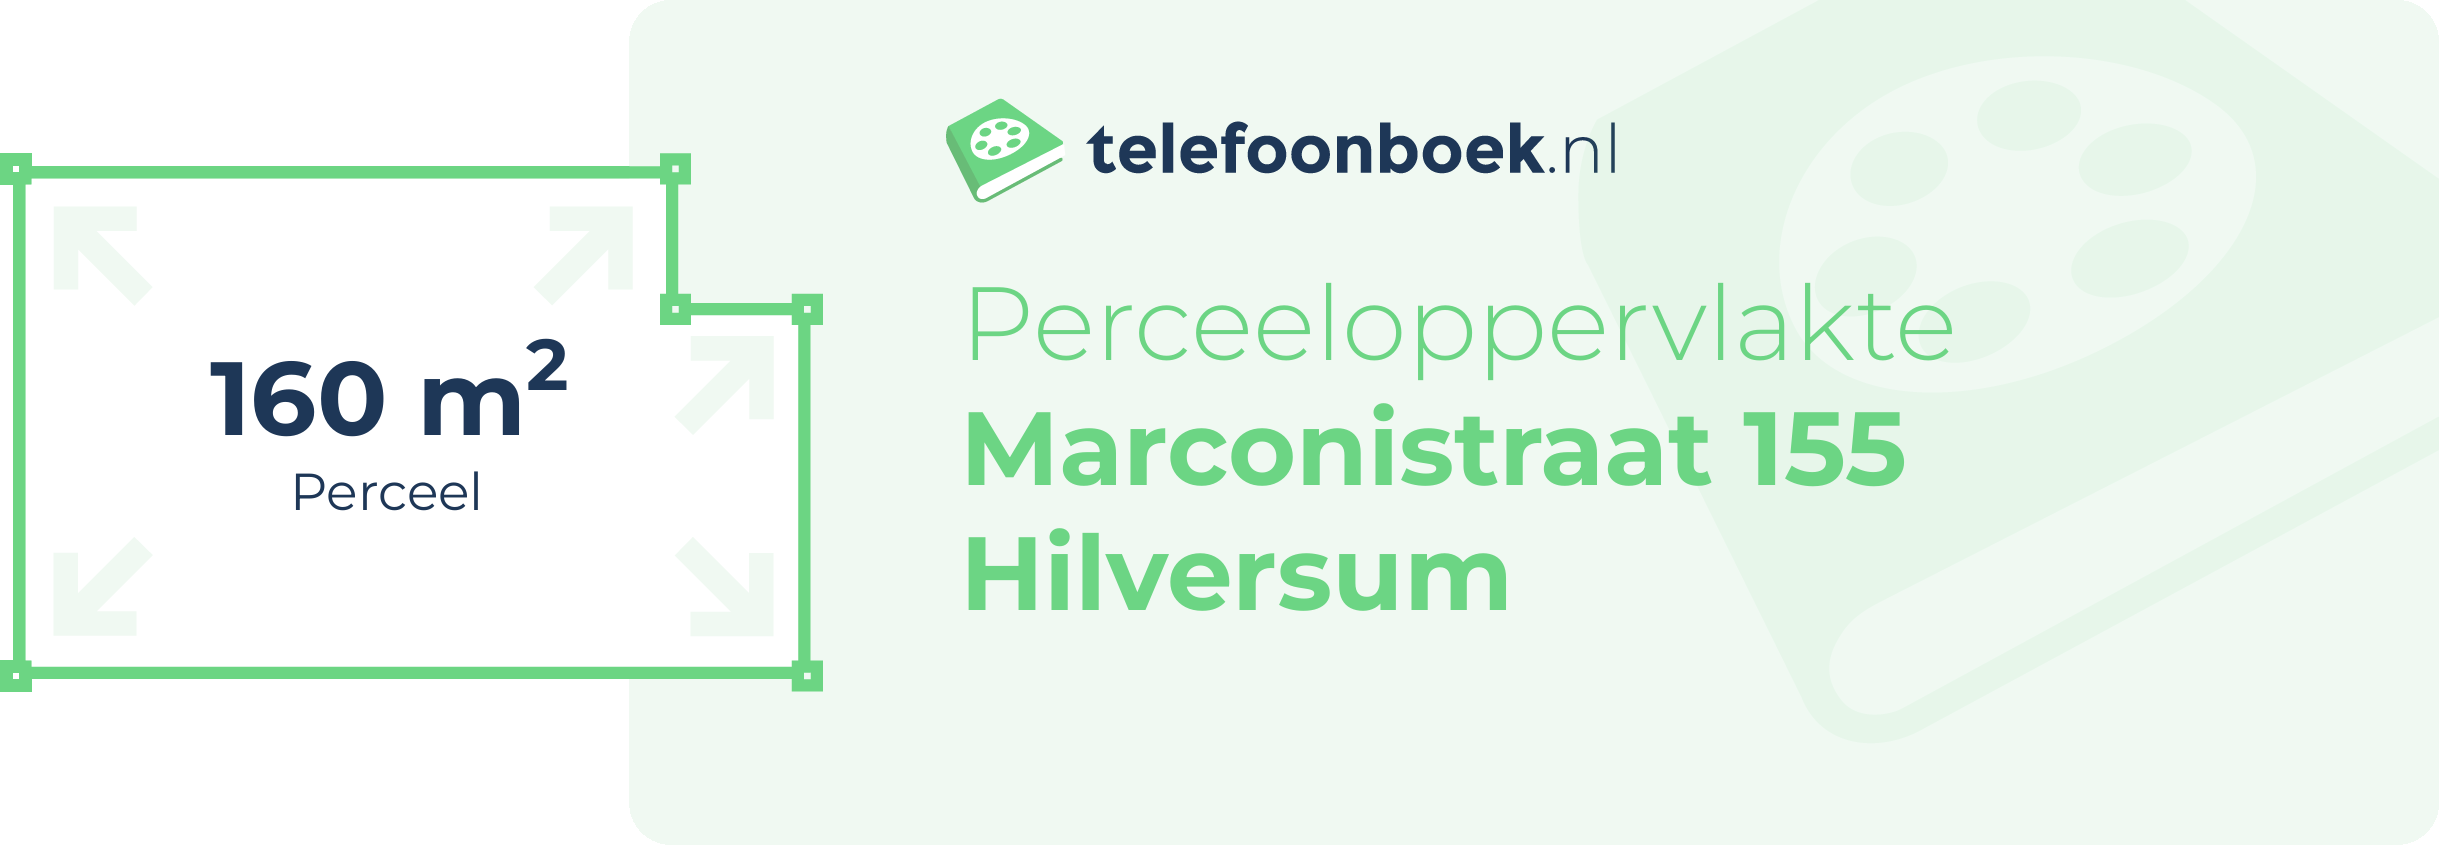 Perceeloppervlakte Marconistraat 155 Hilversum